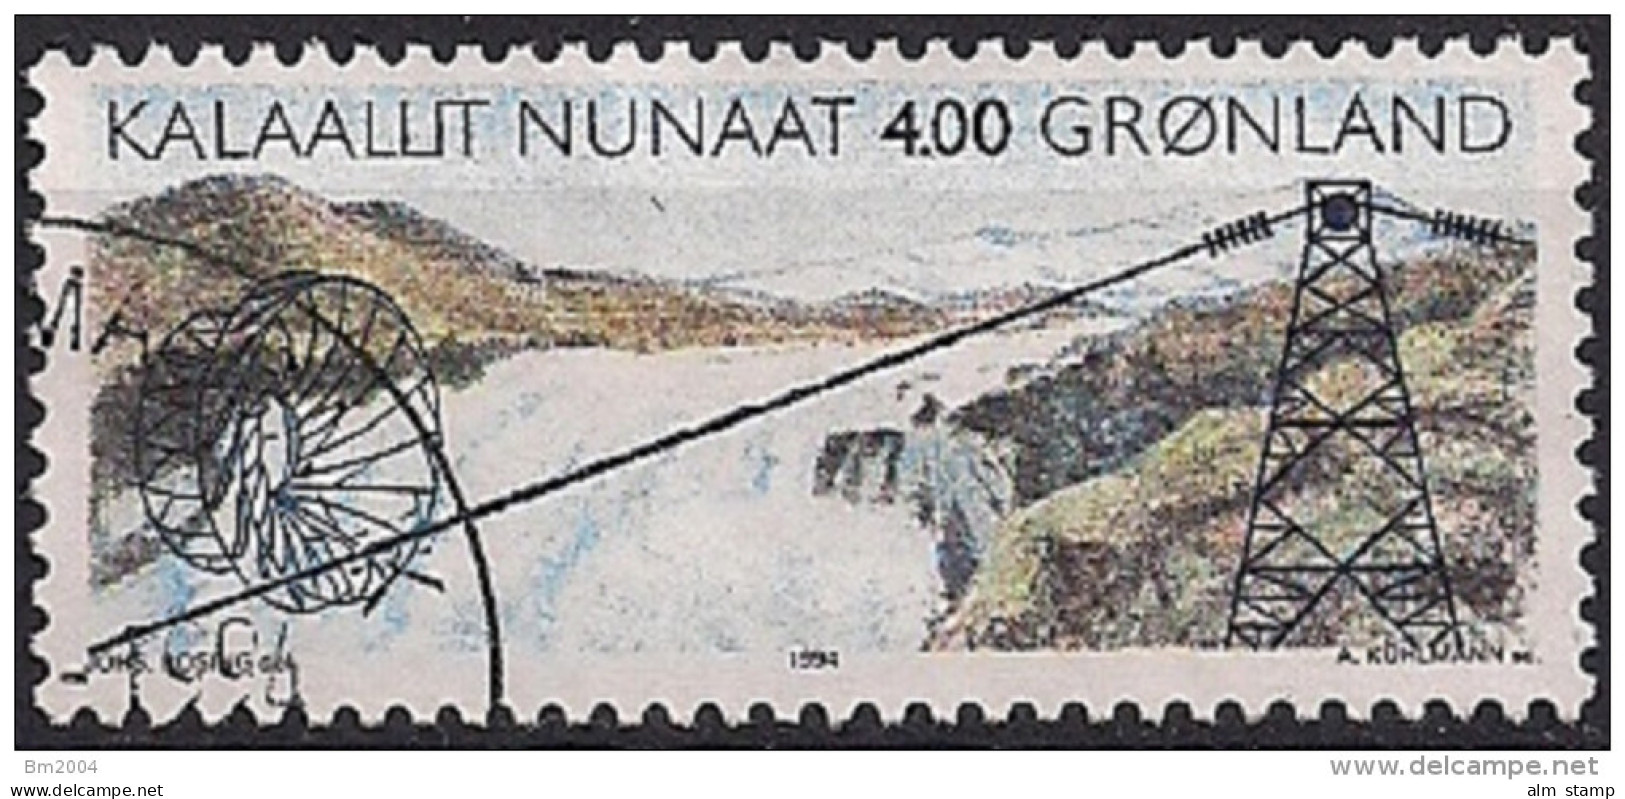 1994 Grönland Mi. 246 Used    Inbetriebnahme Des Wasserkraftwerks Am Buksefjord - Gebraucht